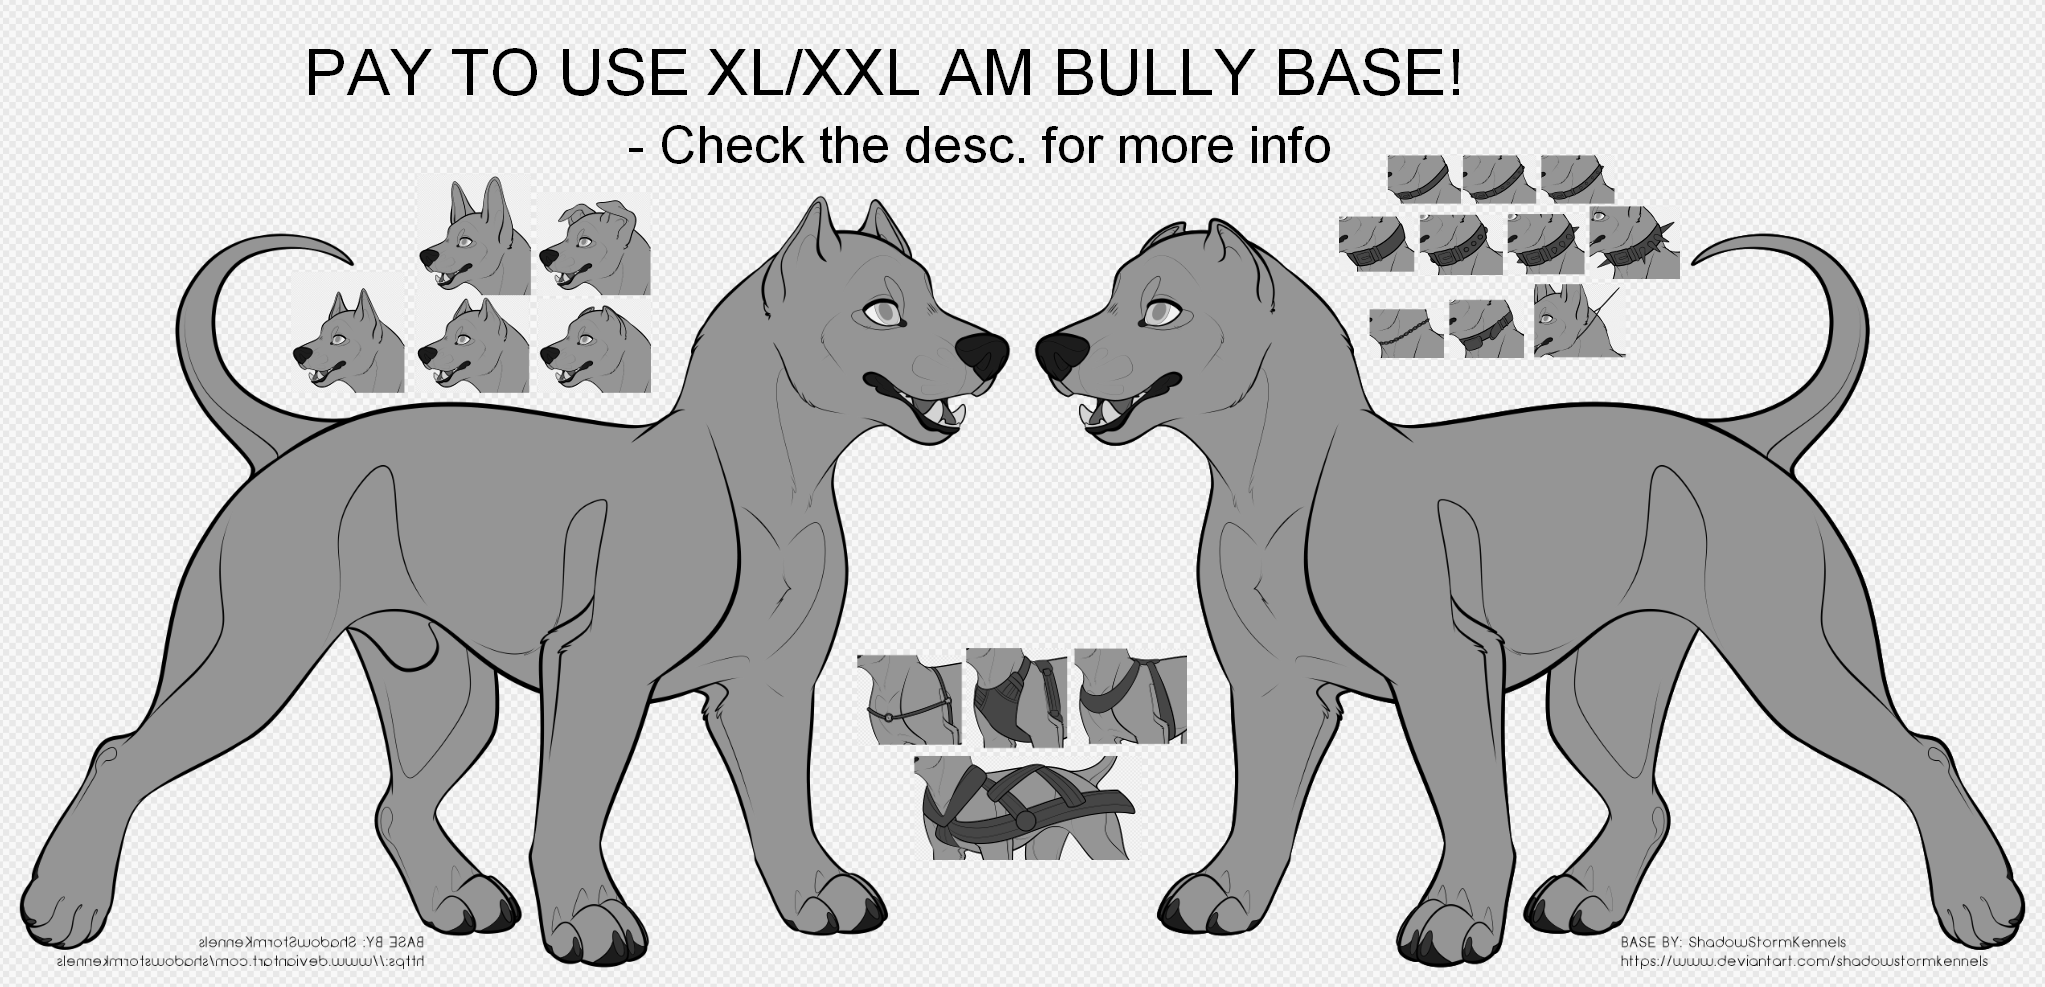 XL/XXL Bully Base 2.0 P2U by ShadowStormDogs on DeviantArt